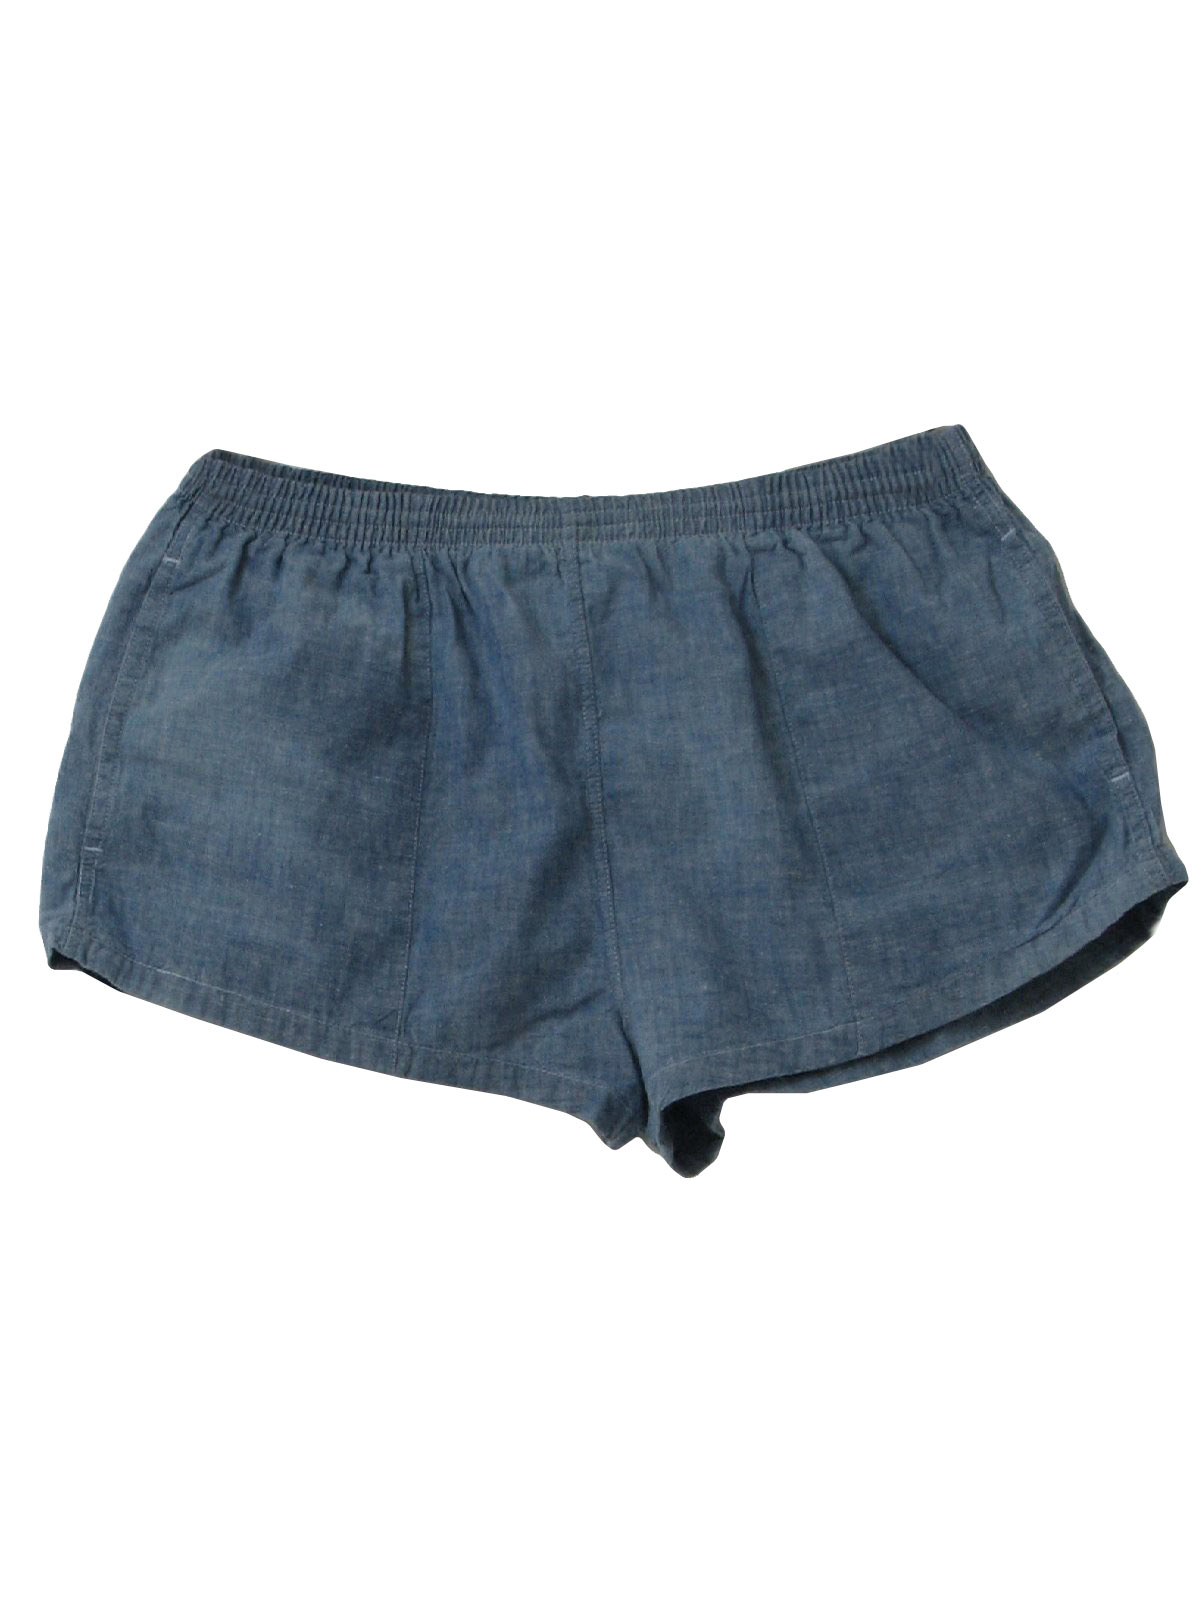 1980s Vintage Shorts: 80s -Gazelle- Mens light blue cotton, nylon brief ...